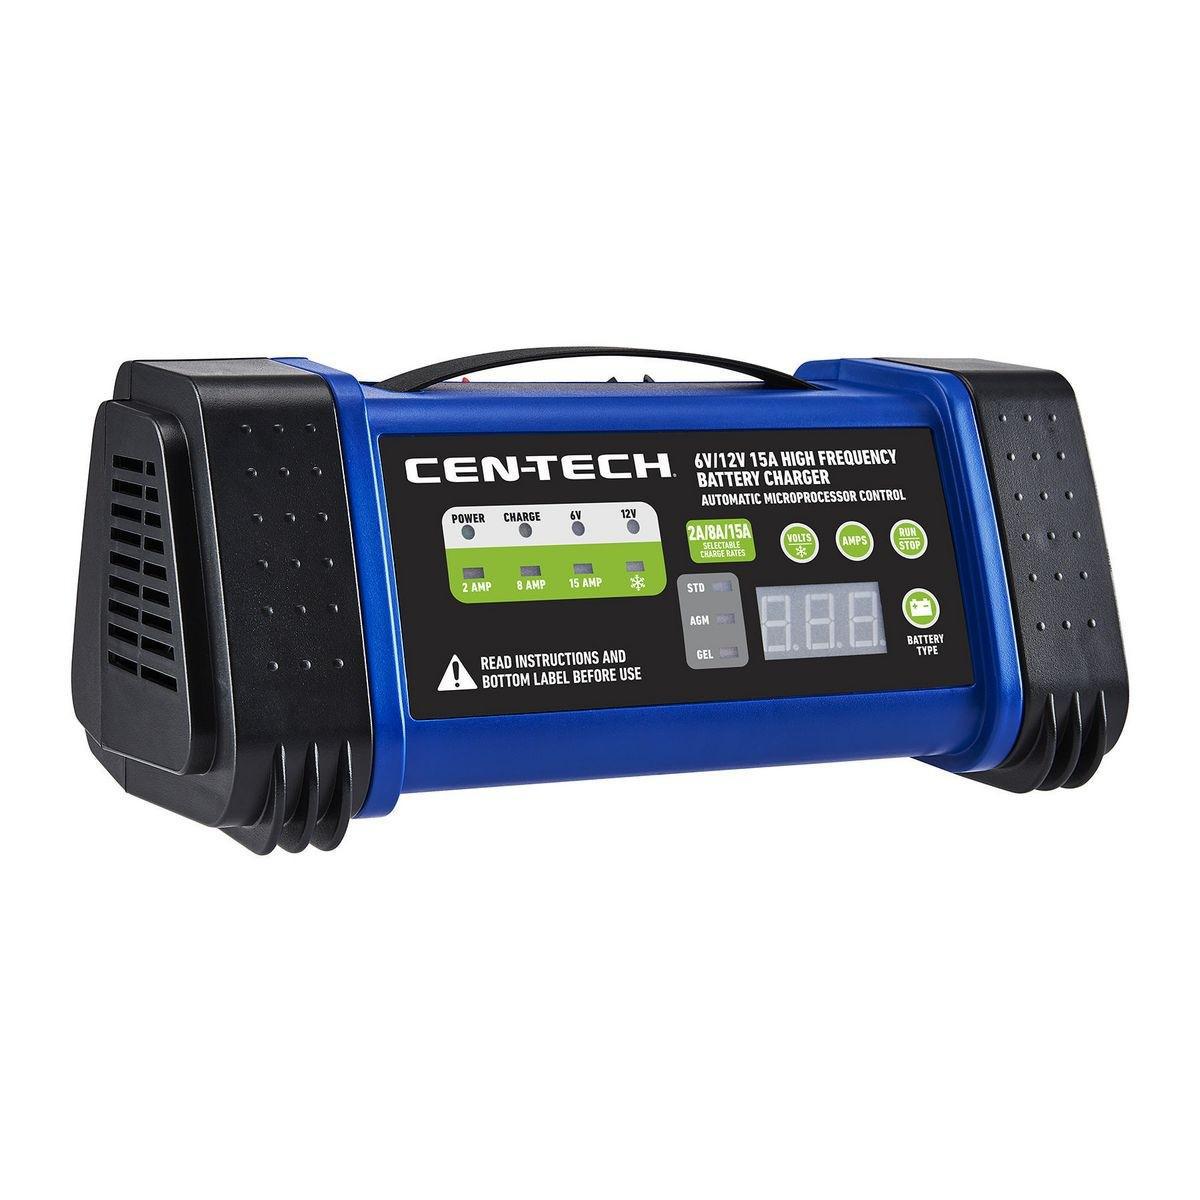 Chargeur de batterie 6v/12v, 15 A haute fréquence, CEN-TECH